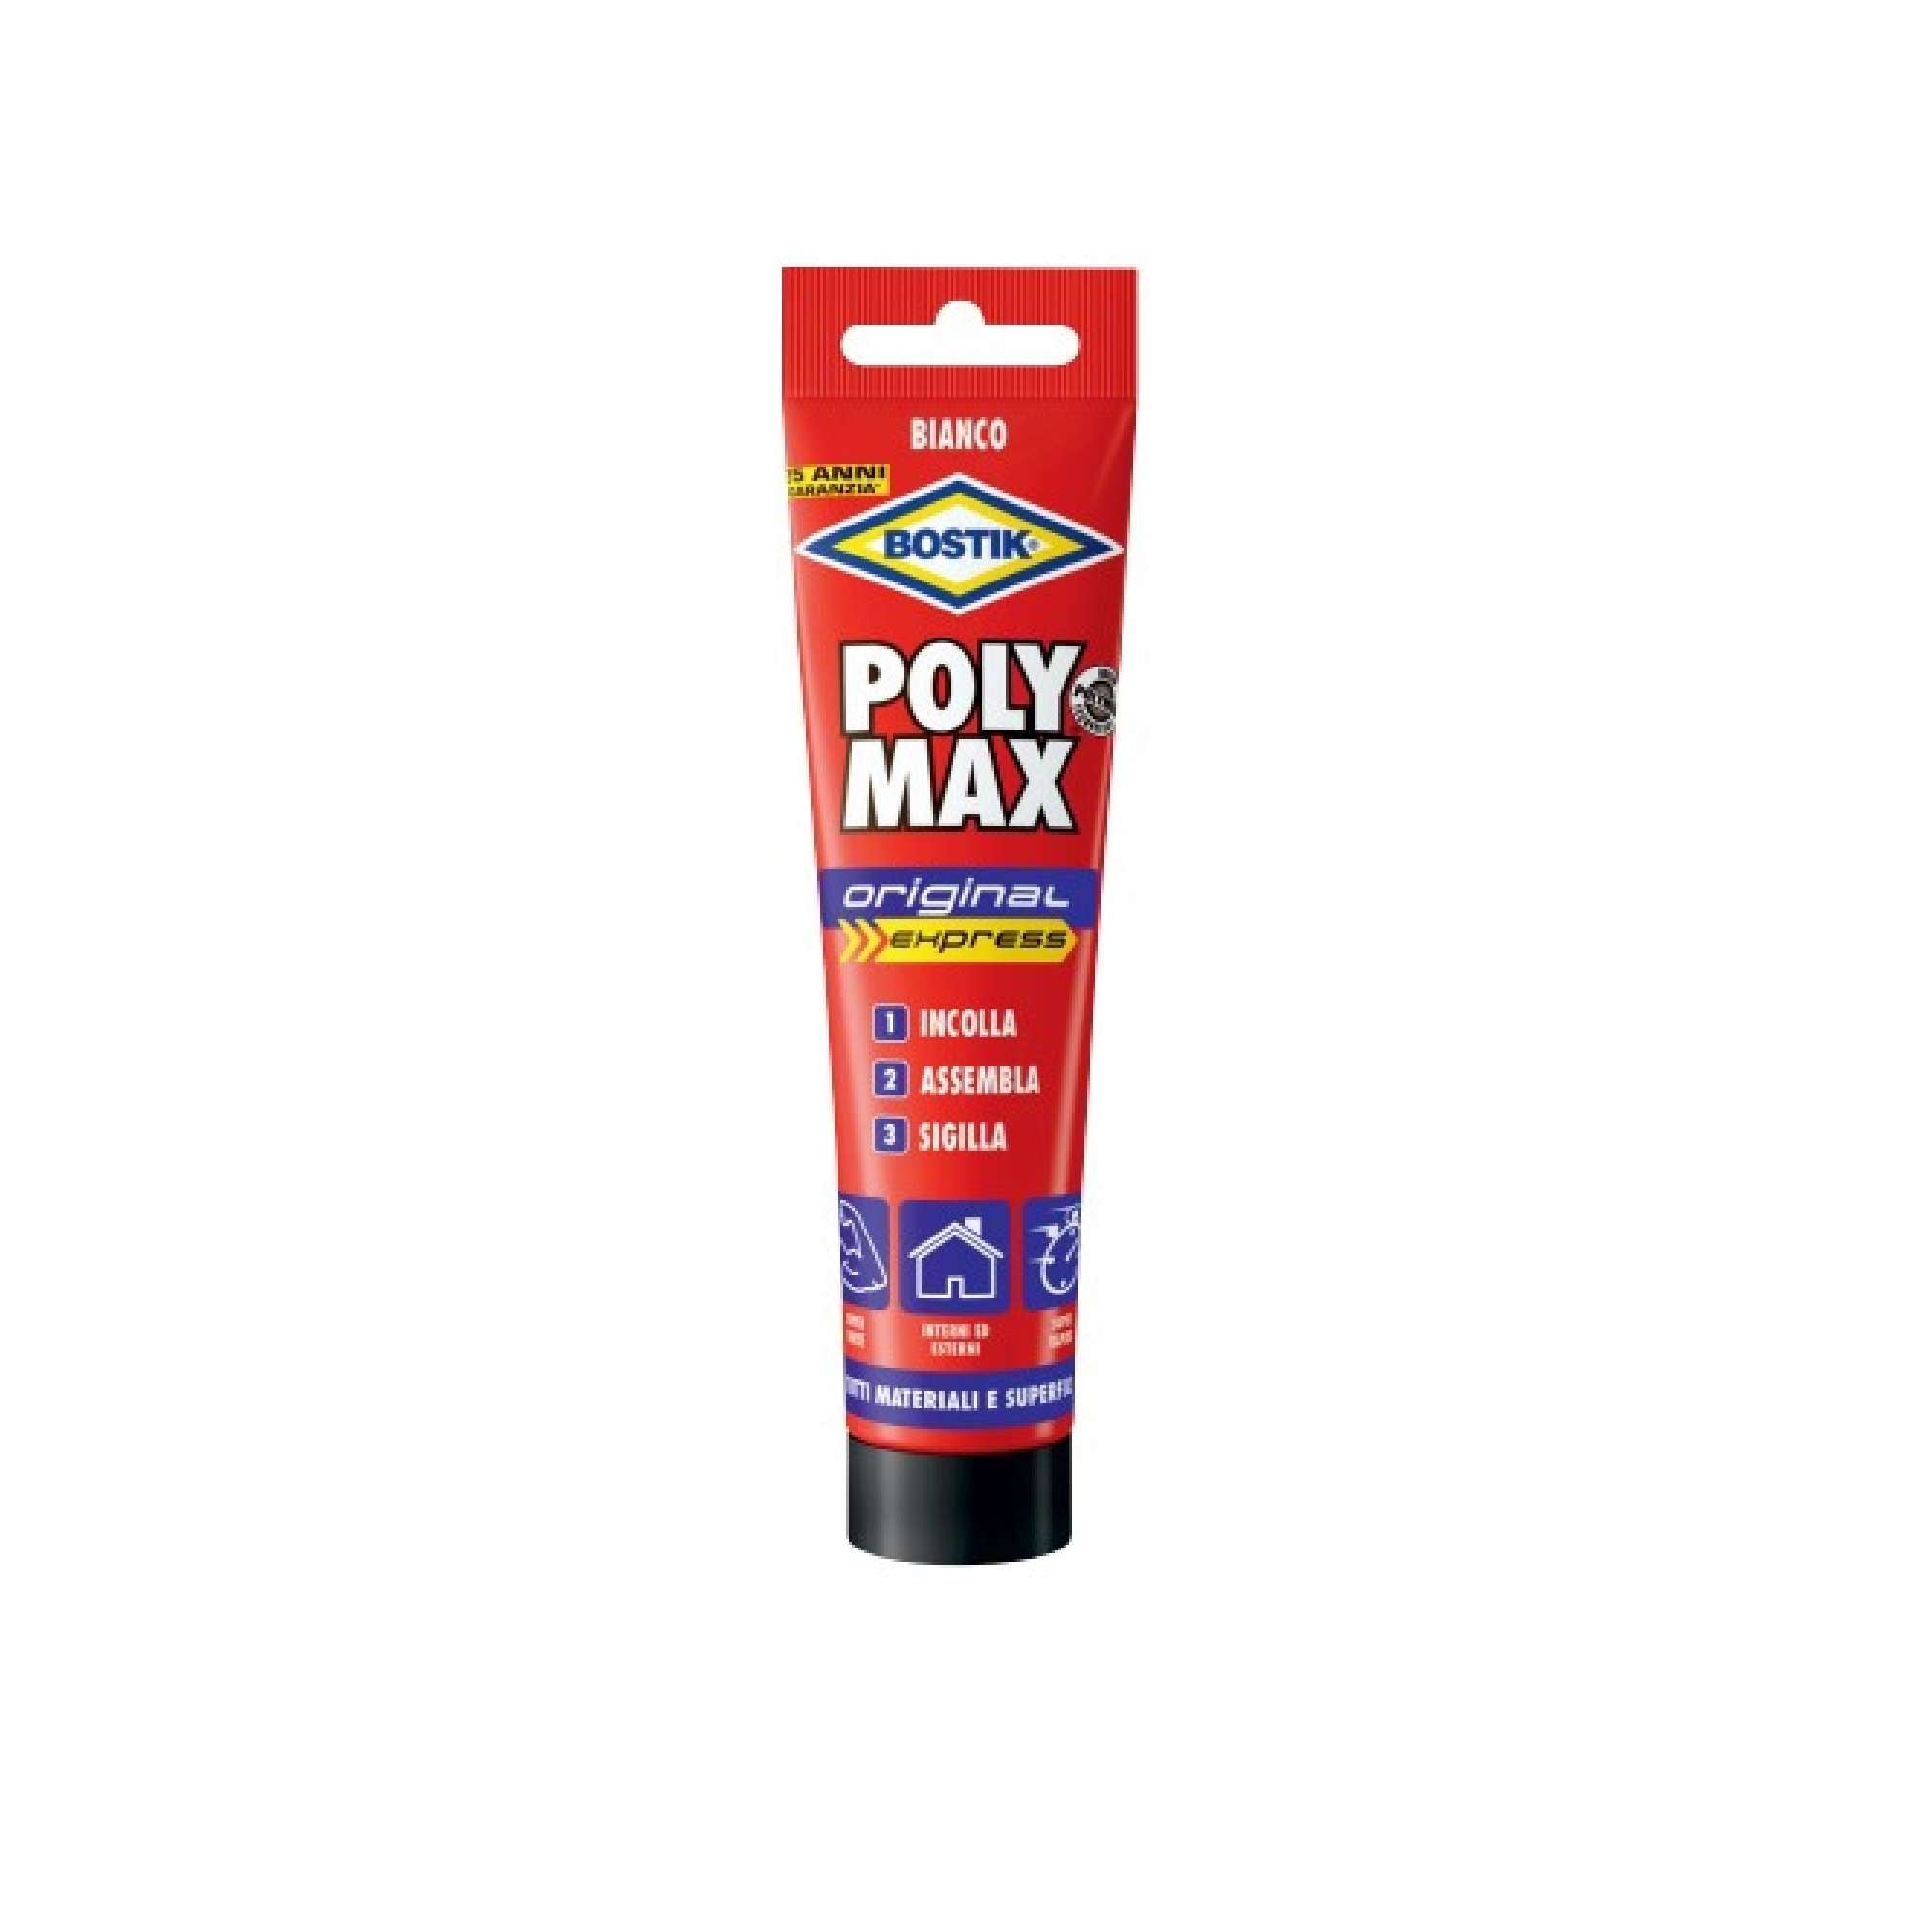 Polymax Original Bianc Adhesive Tub. - UHU Bostik 6300499